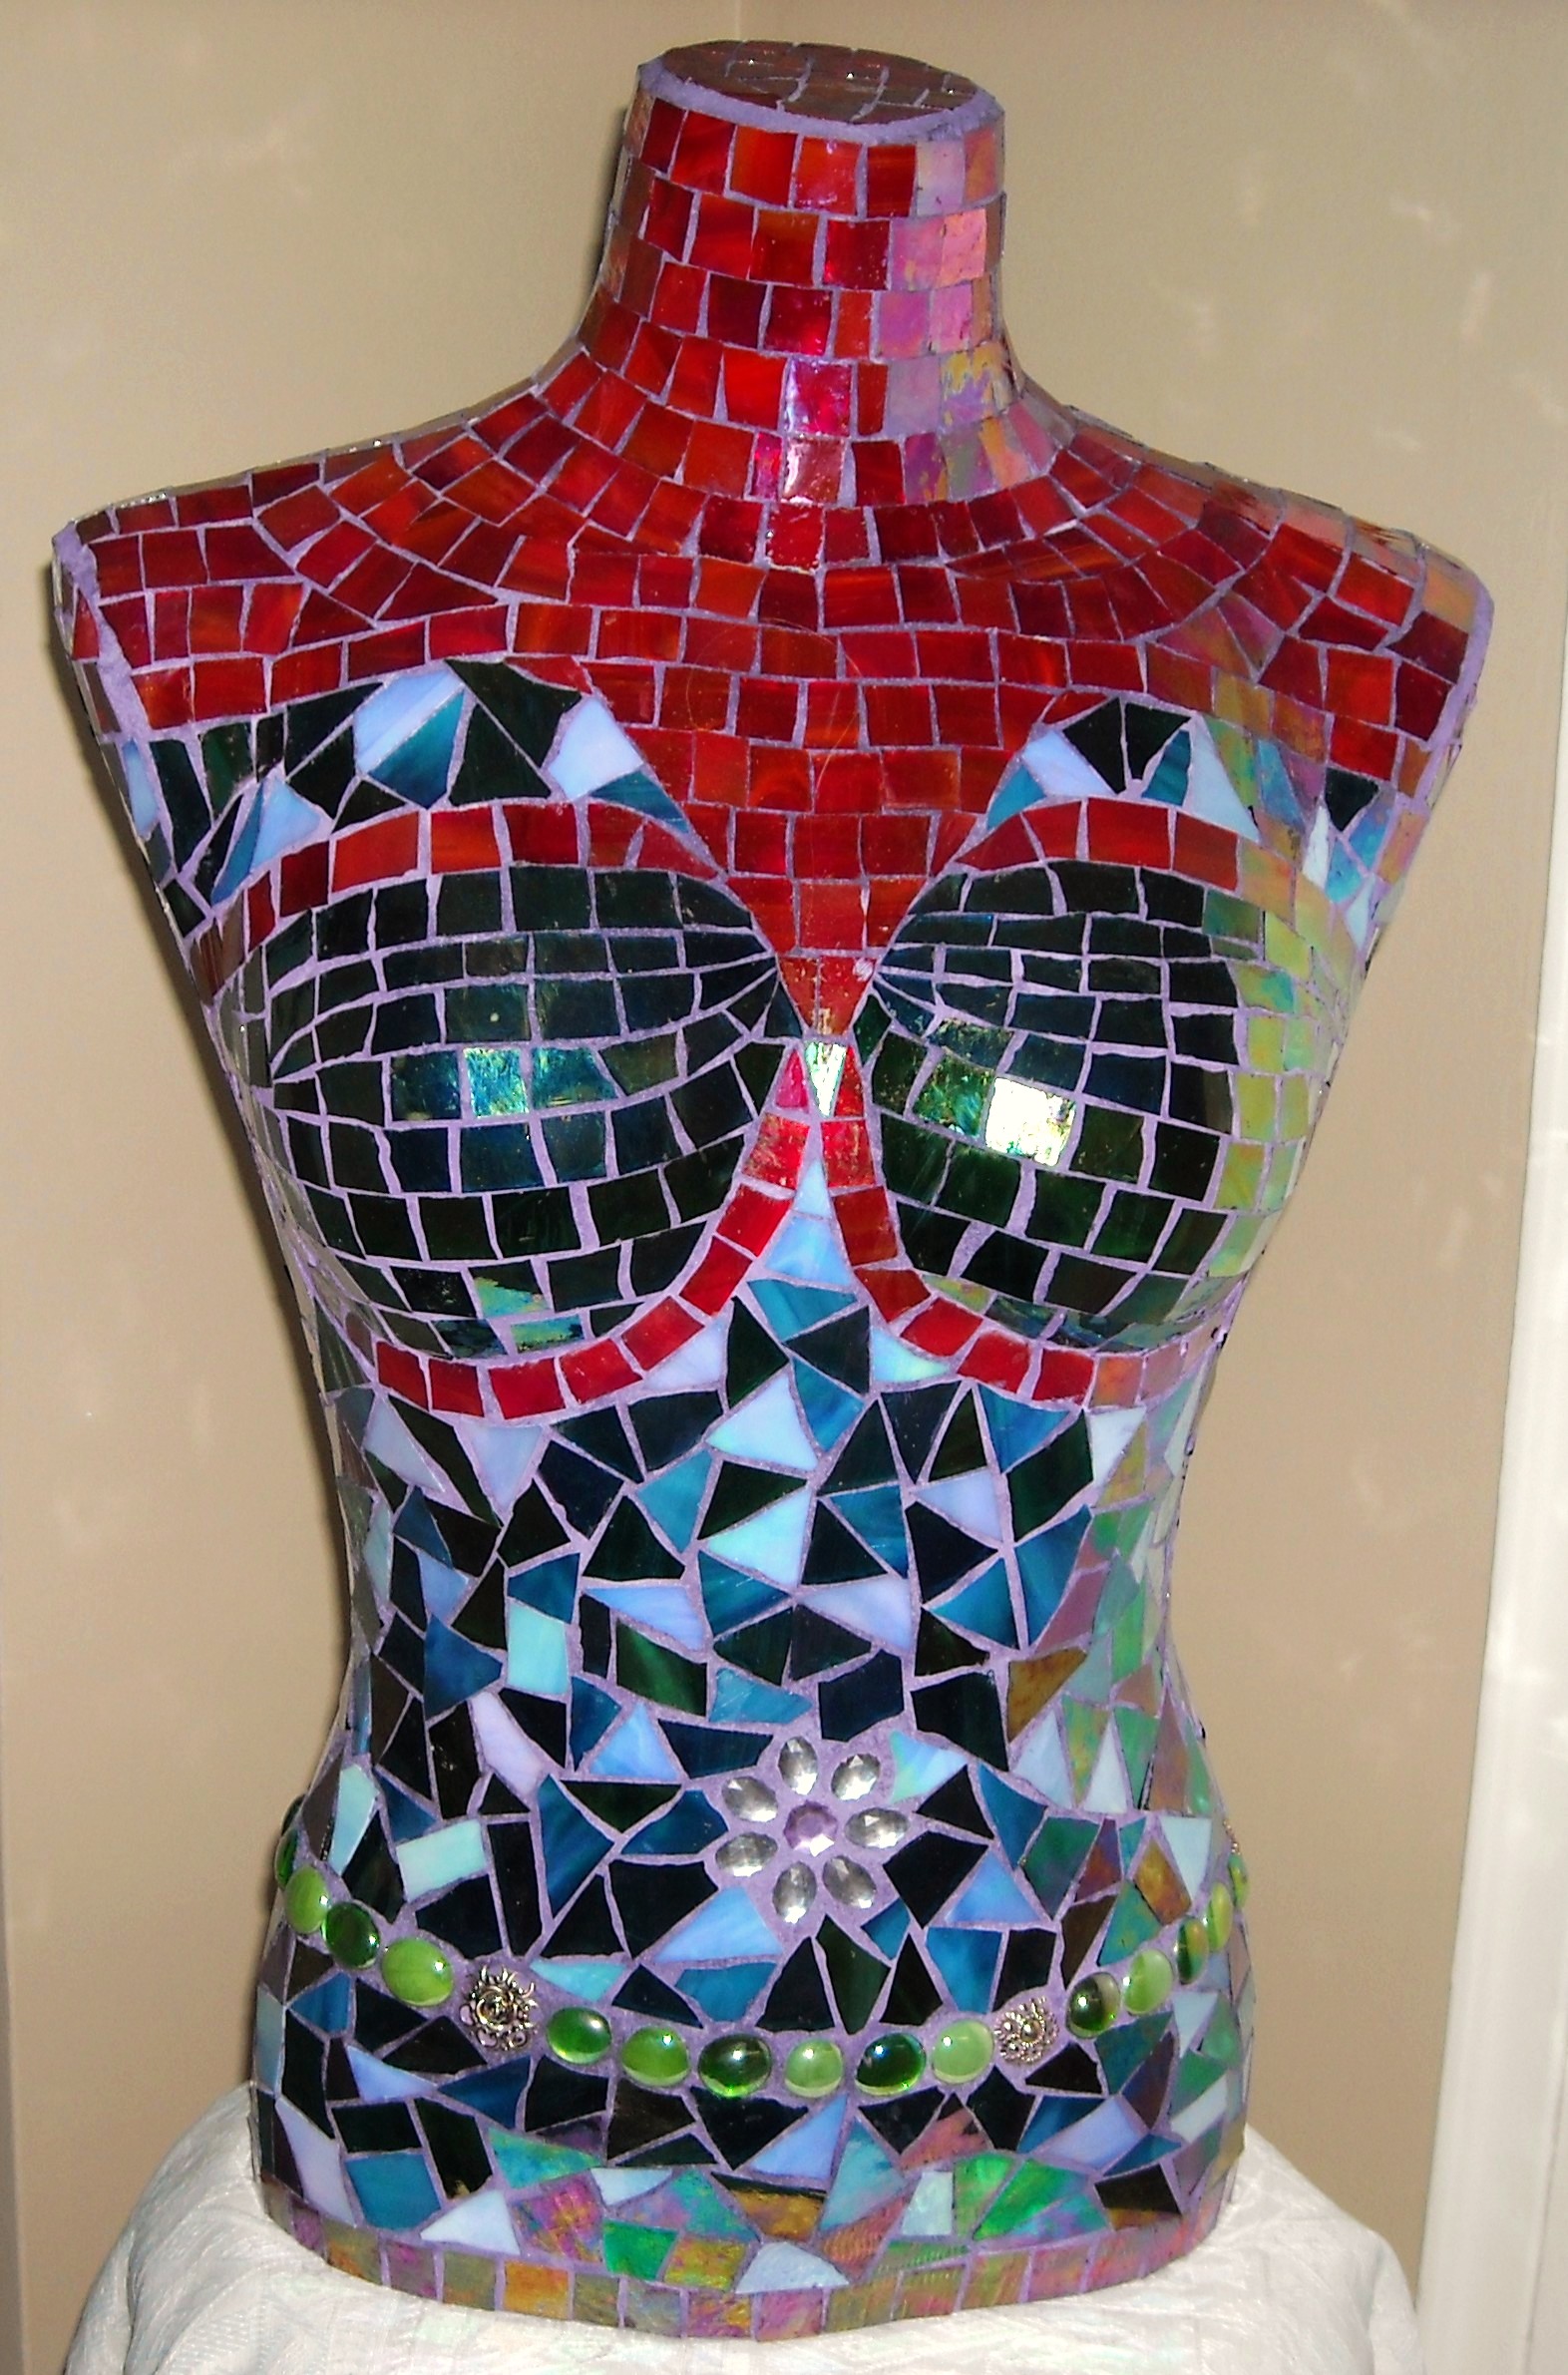 Mosaic torso